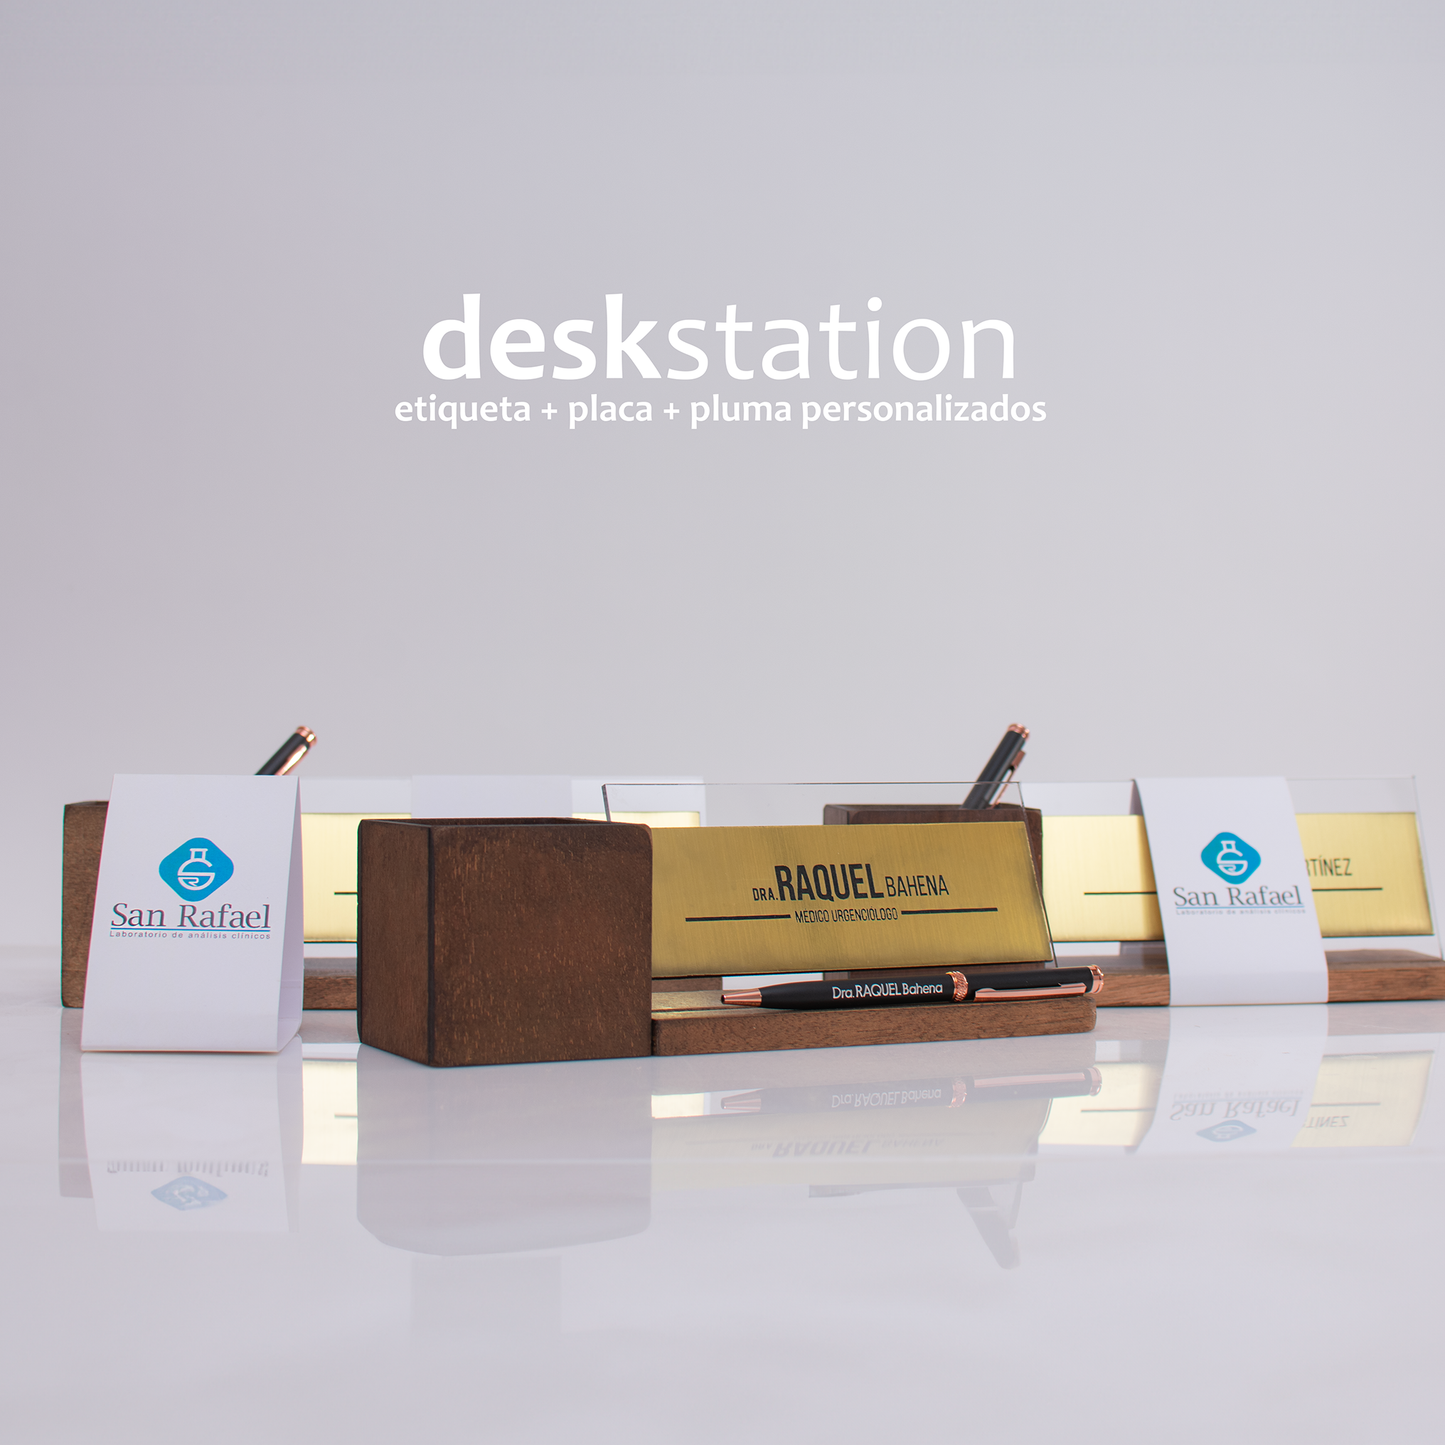 Desk Station